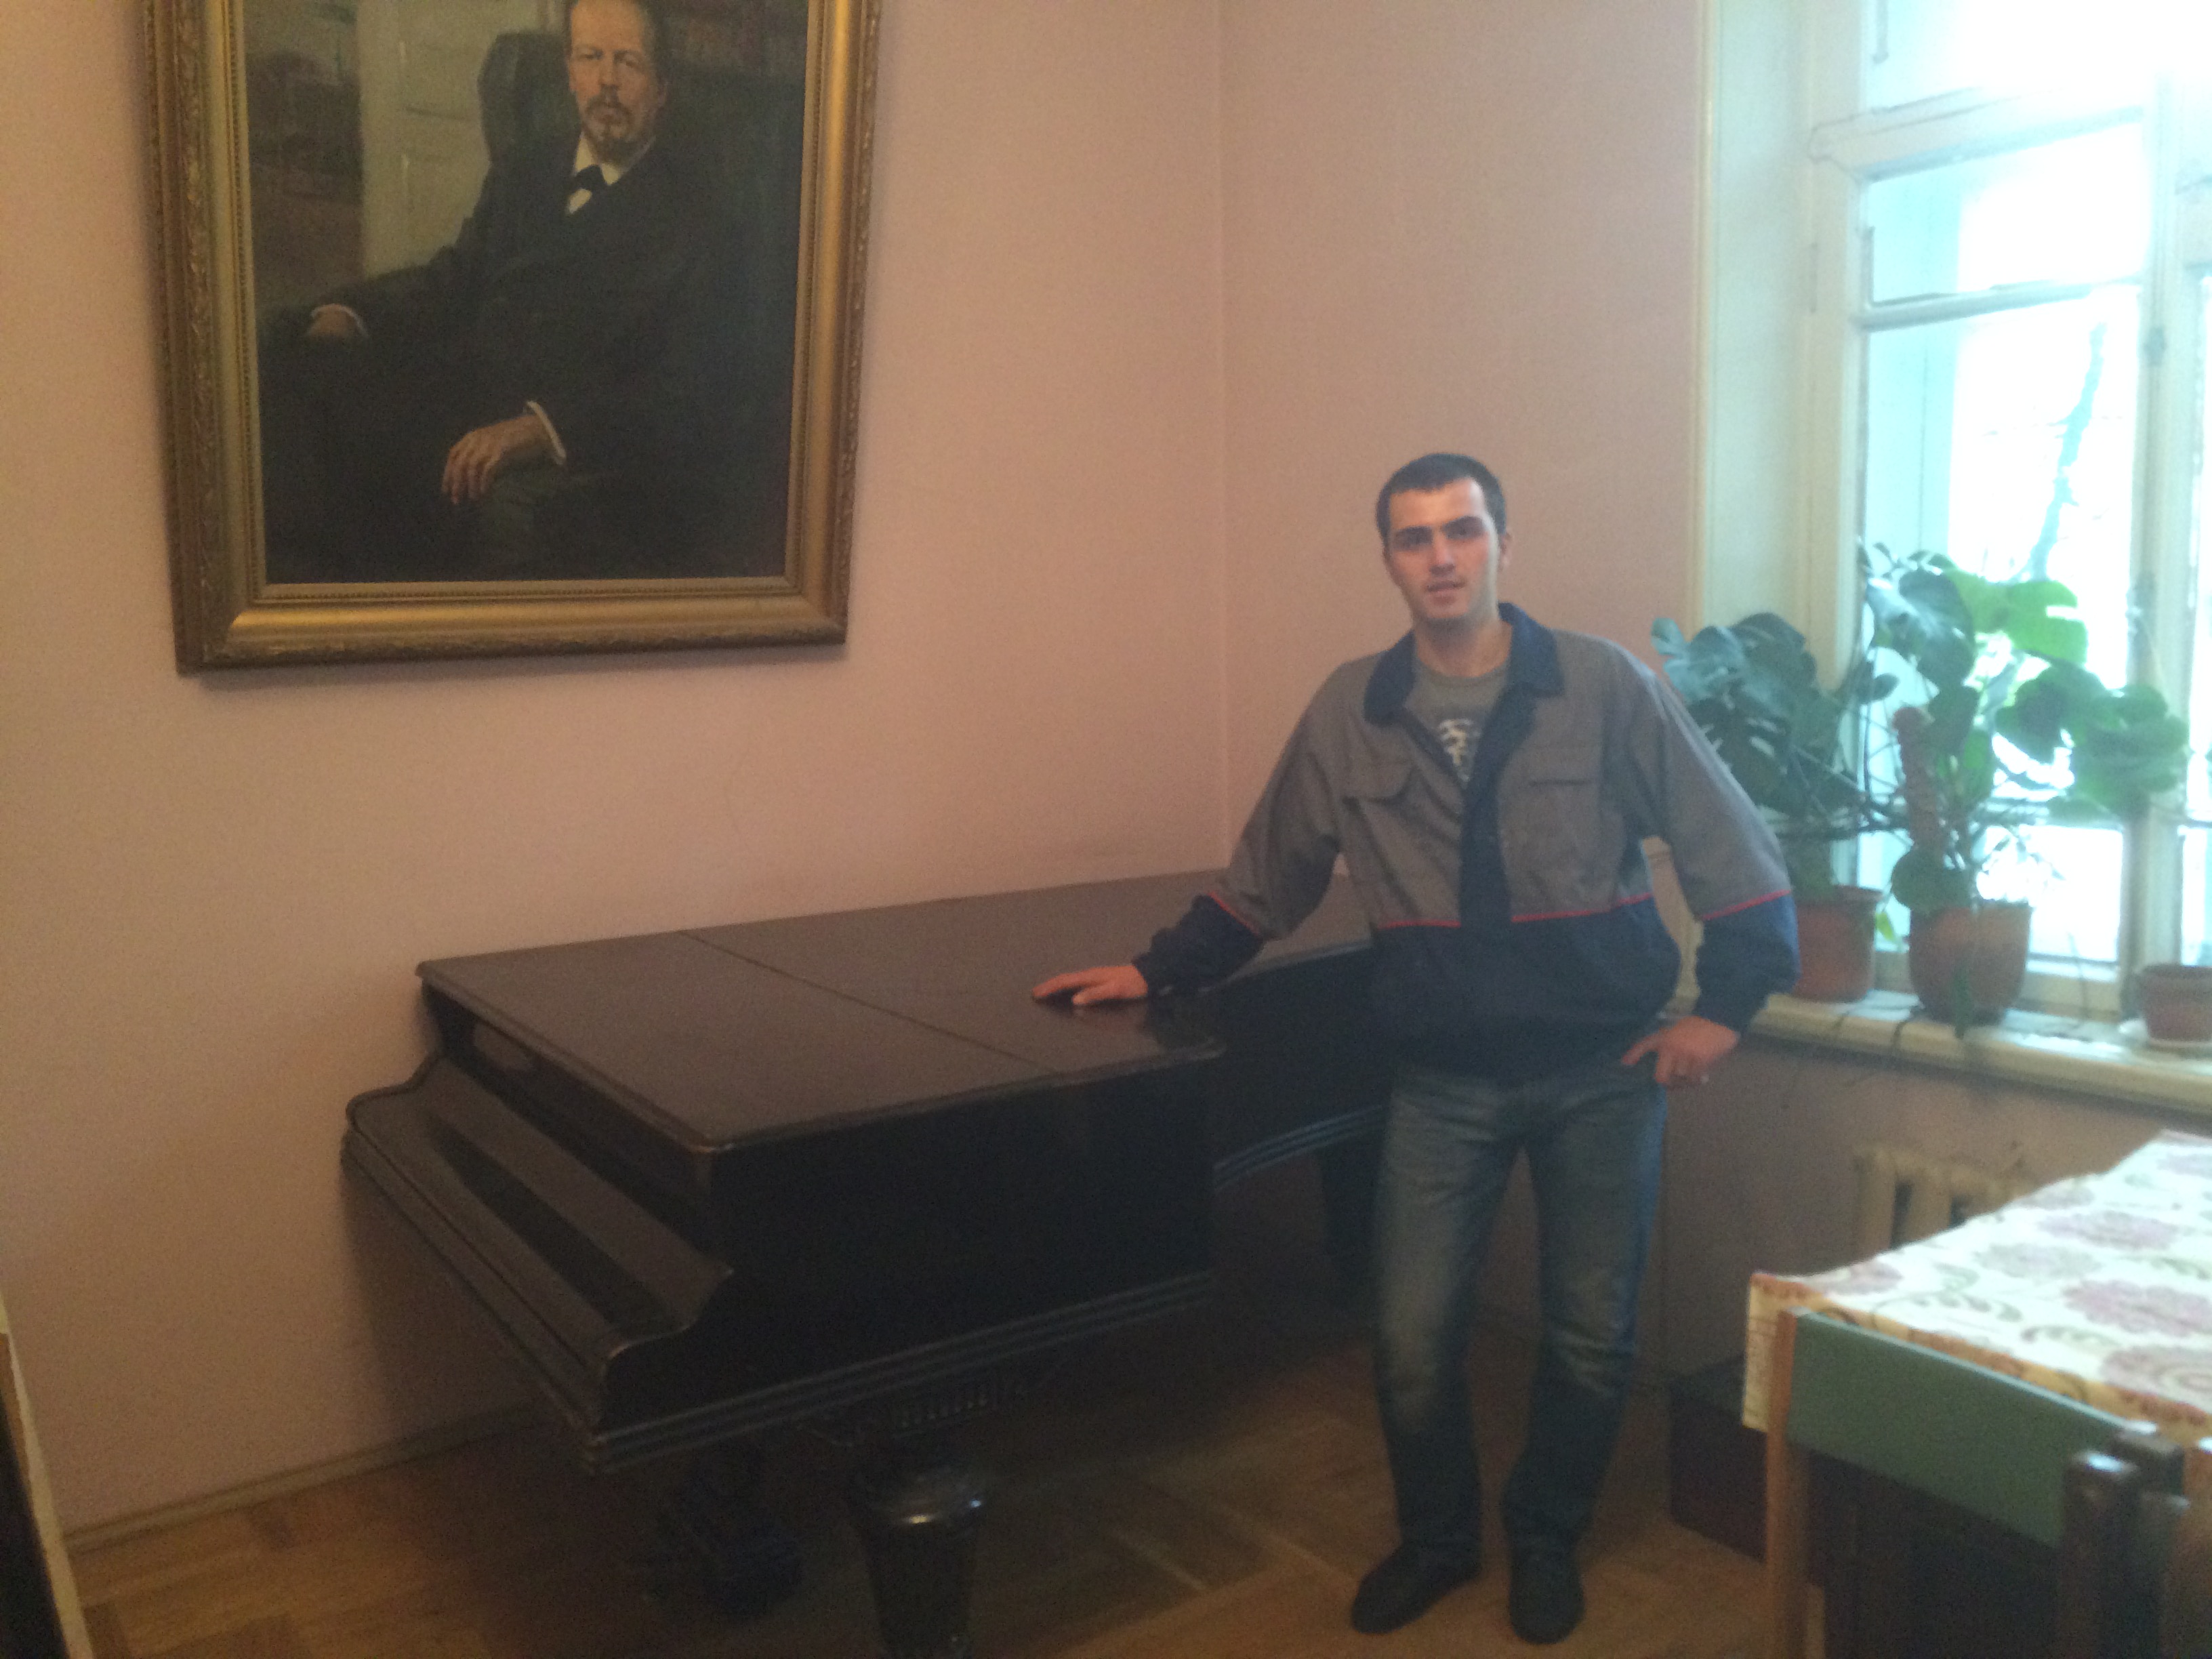 Перевезти рояль пианино фортепиано в Спб недорого http: //мегасервисспб.рф/perevozka-pianino-royalya/